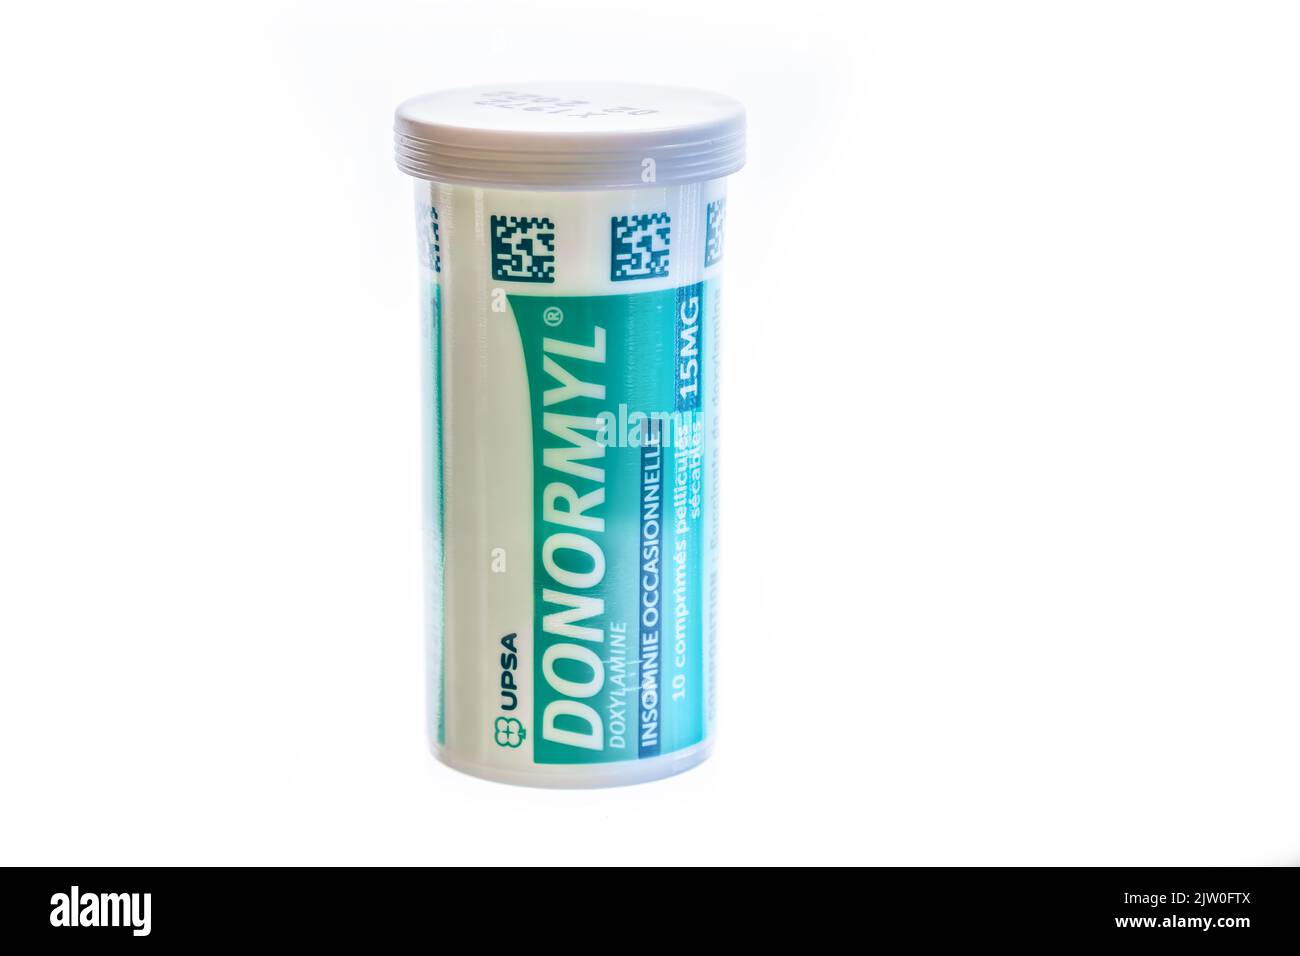 Huelva, España - 2 de septiembre de 2022: La doxilamina Donormyl se utiliza para el insomnio y para el tratamiento de estornudos, secreción nasal, lagrimeo, urticaria, erupción cutánea, él Foto de stock